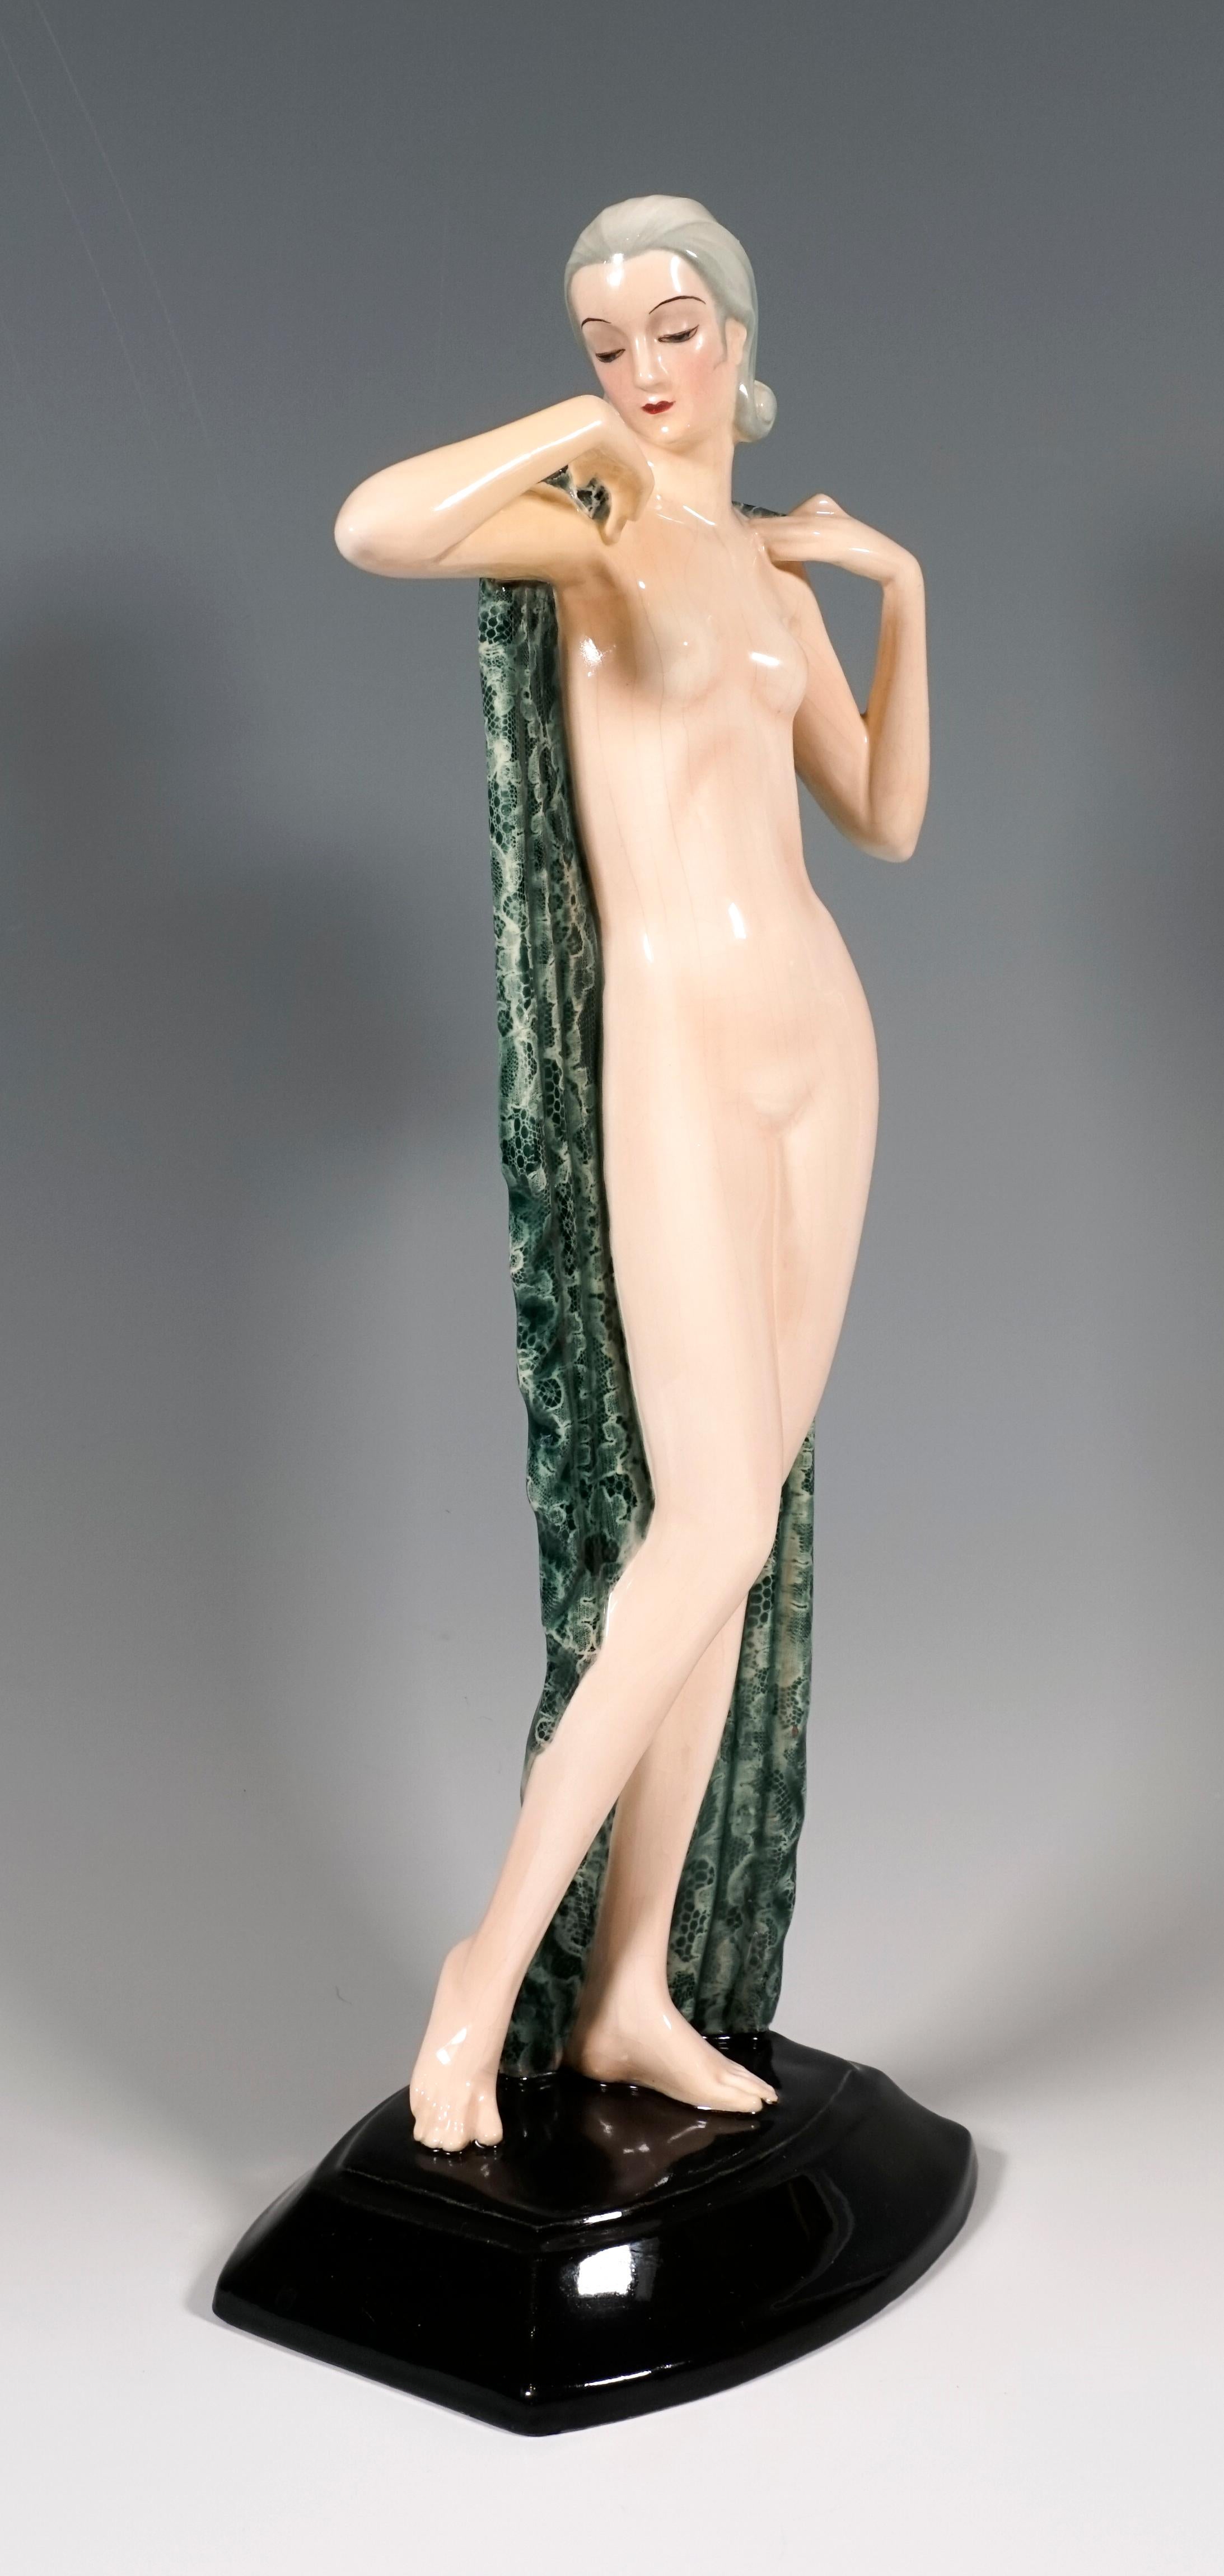 Sehr seltene Goldscheider Keramikfigur aus den 1930er Jahren:
Die stehende hübsche junge Frau mit zurückgekämmtem und im Nacken hochgestecktem Haar bedeckt ihre Blöße lediglich mit einem großen, grün-weißen Tuch, das sie hinter sich hält und das den